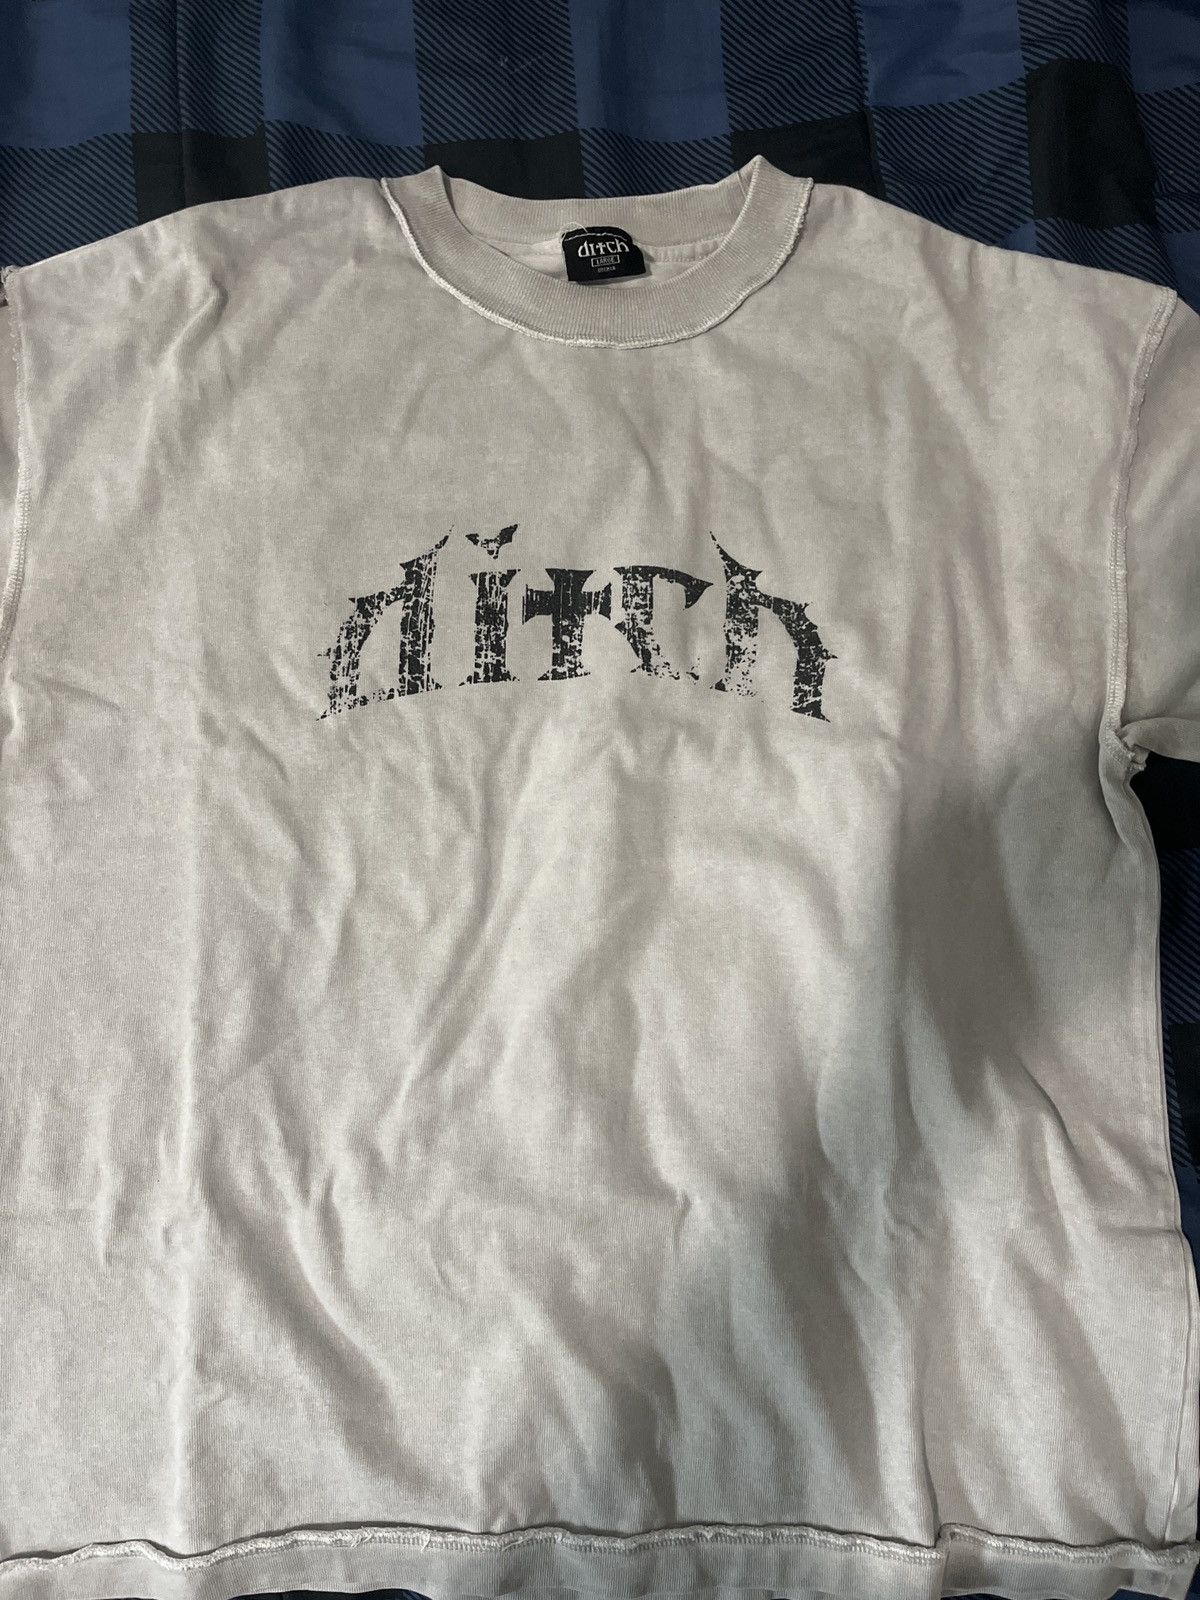 Vintage Ditch t-shirt Size US L / EU 52-54 / 3 - 1 Preview